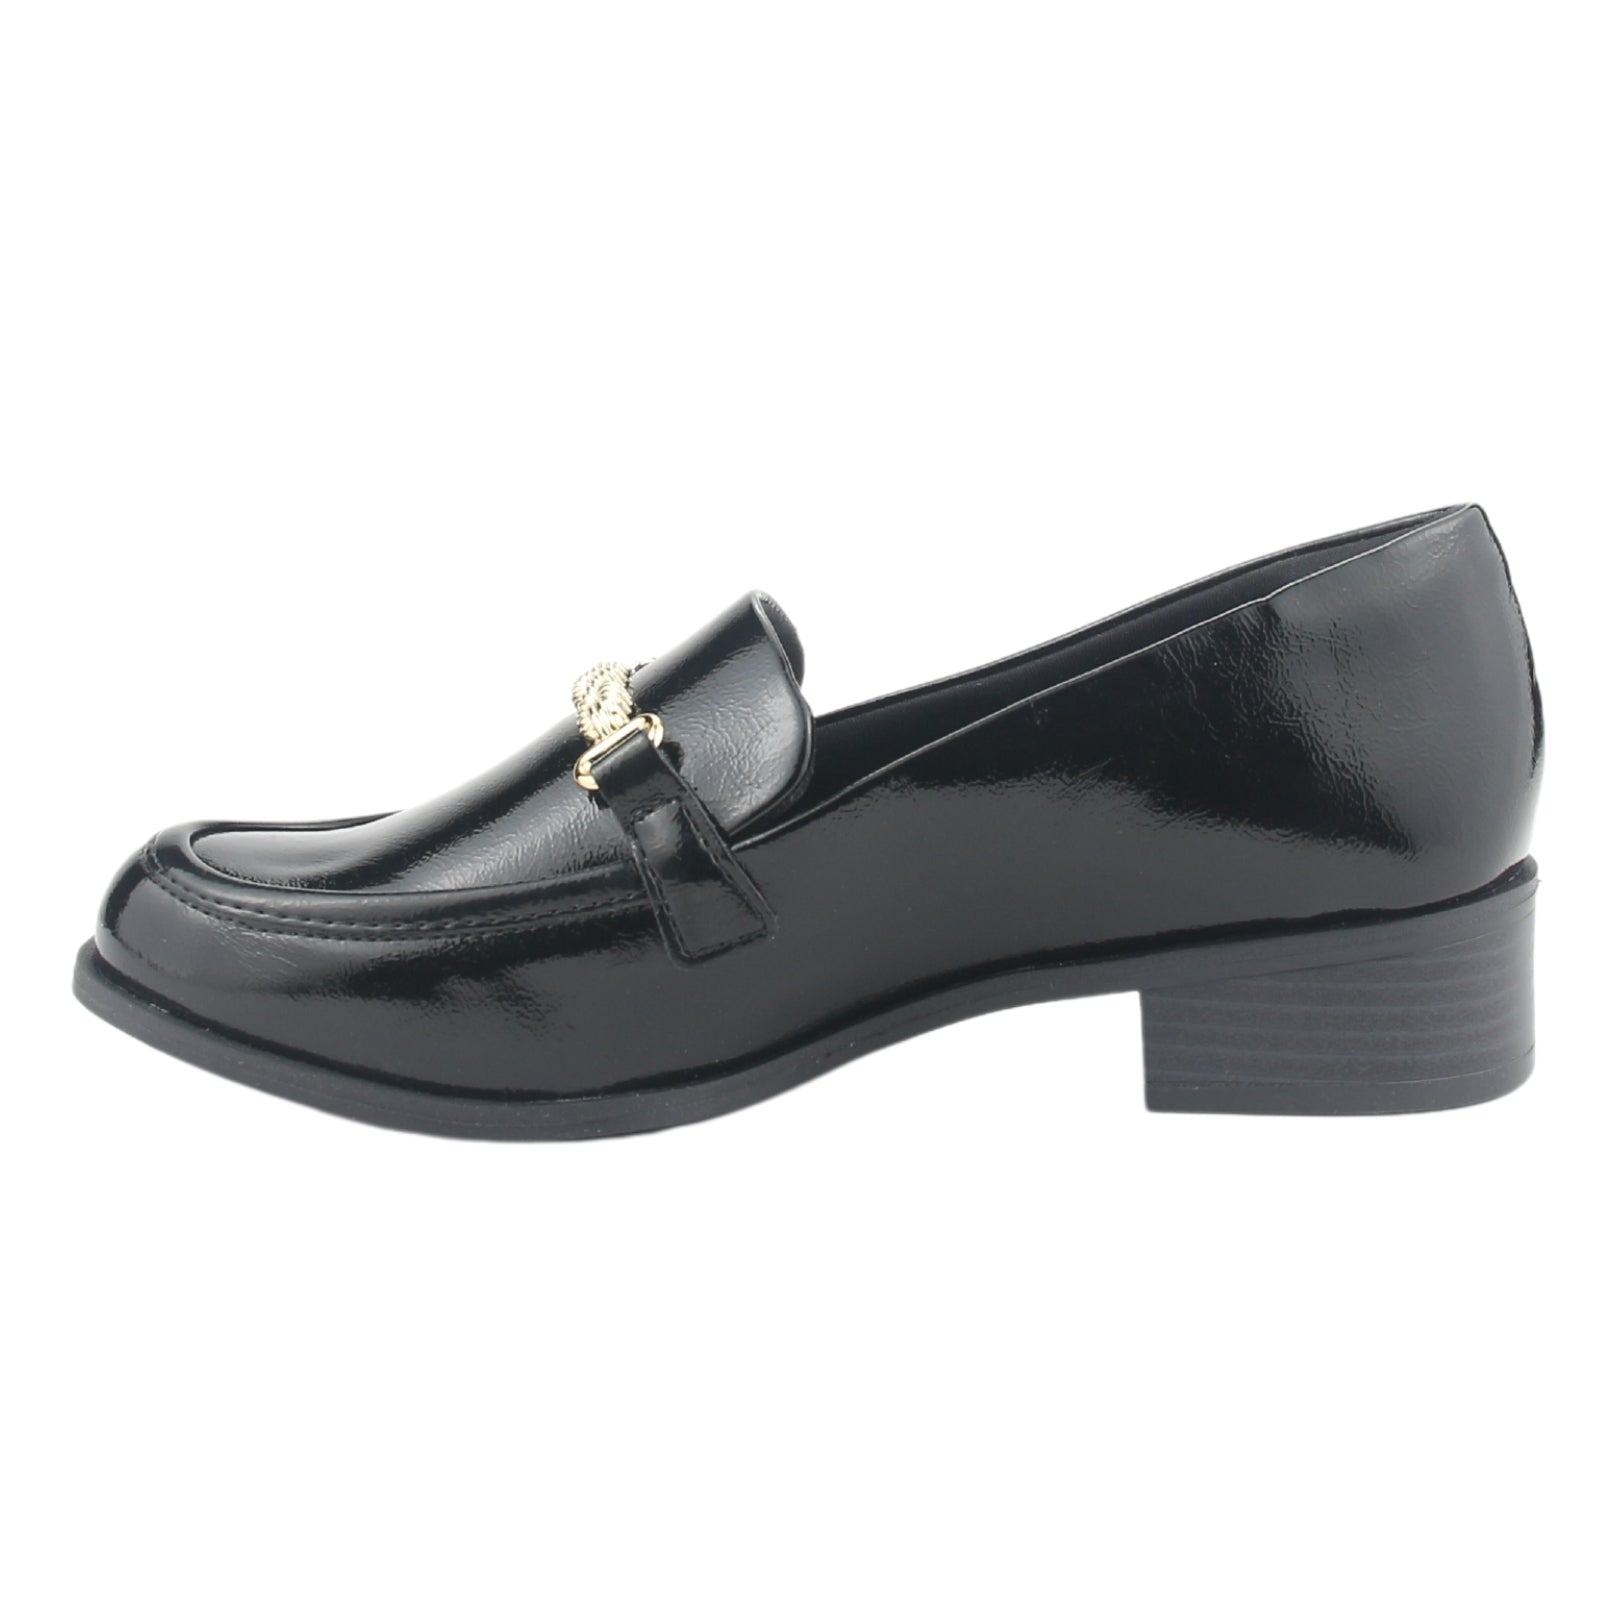 Zapato Comfortflex Mujer 2495304 Negro Casual